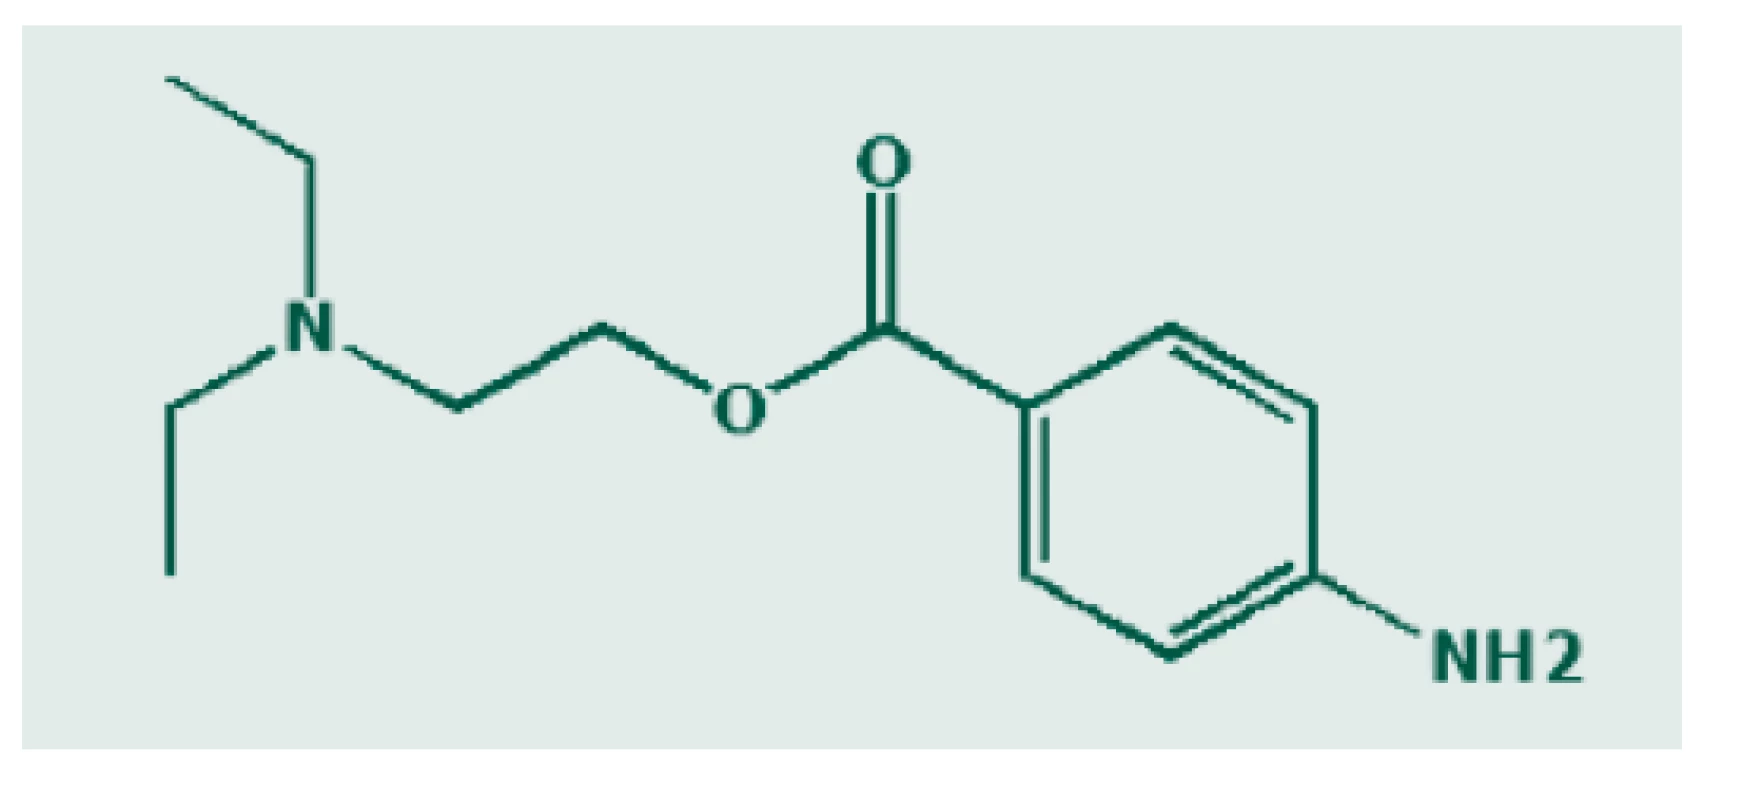 Chemická struktura prokainu. Zdroj: Wikimedia Commons
(CC BY 4.0)